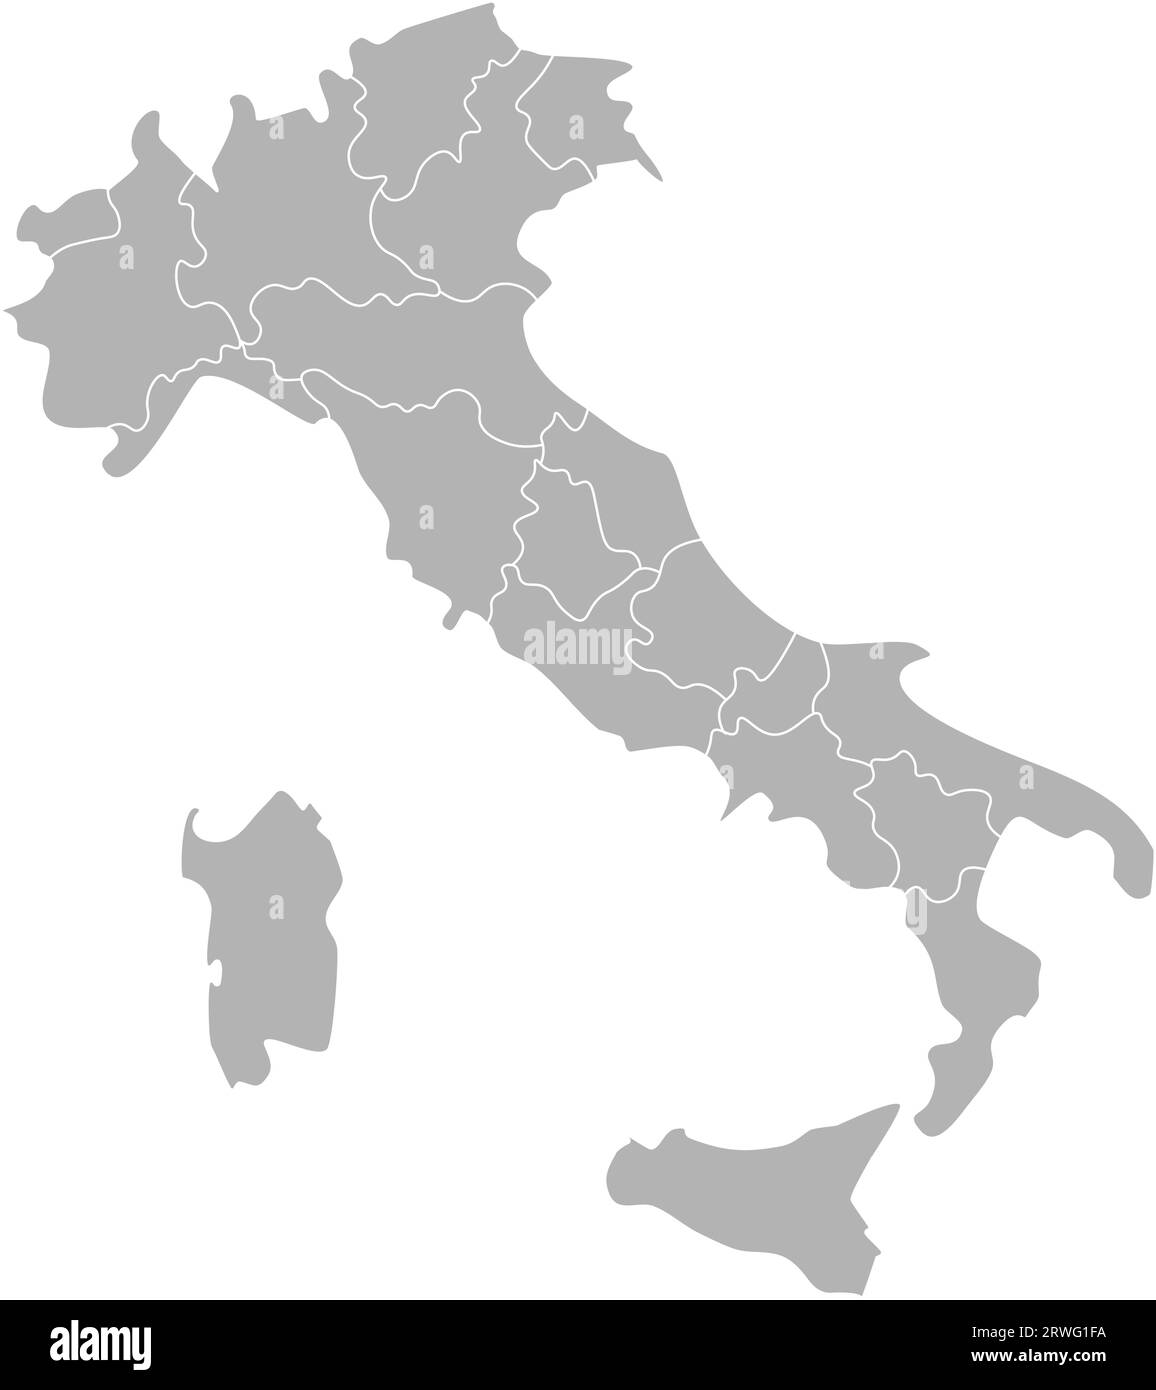 Vektorisolierte Darstellung einer vereinfachten Verwaltungskarte Italiens. Grenzen der Provinzen (Regionen). Graue Silhouetten. Weiße Umrandung. Stock Vektor